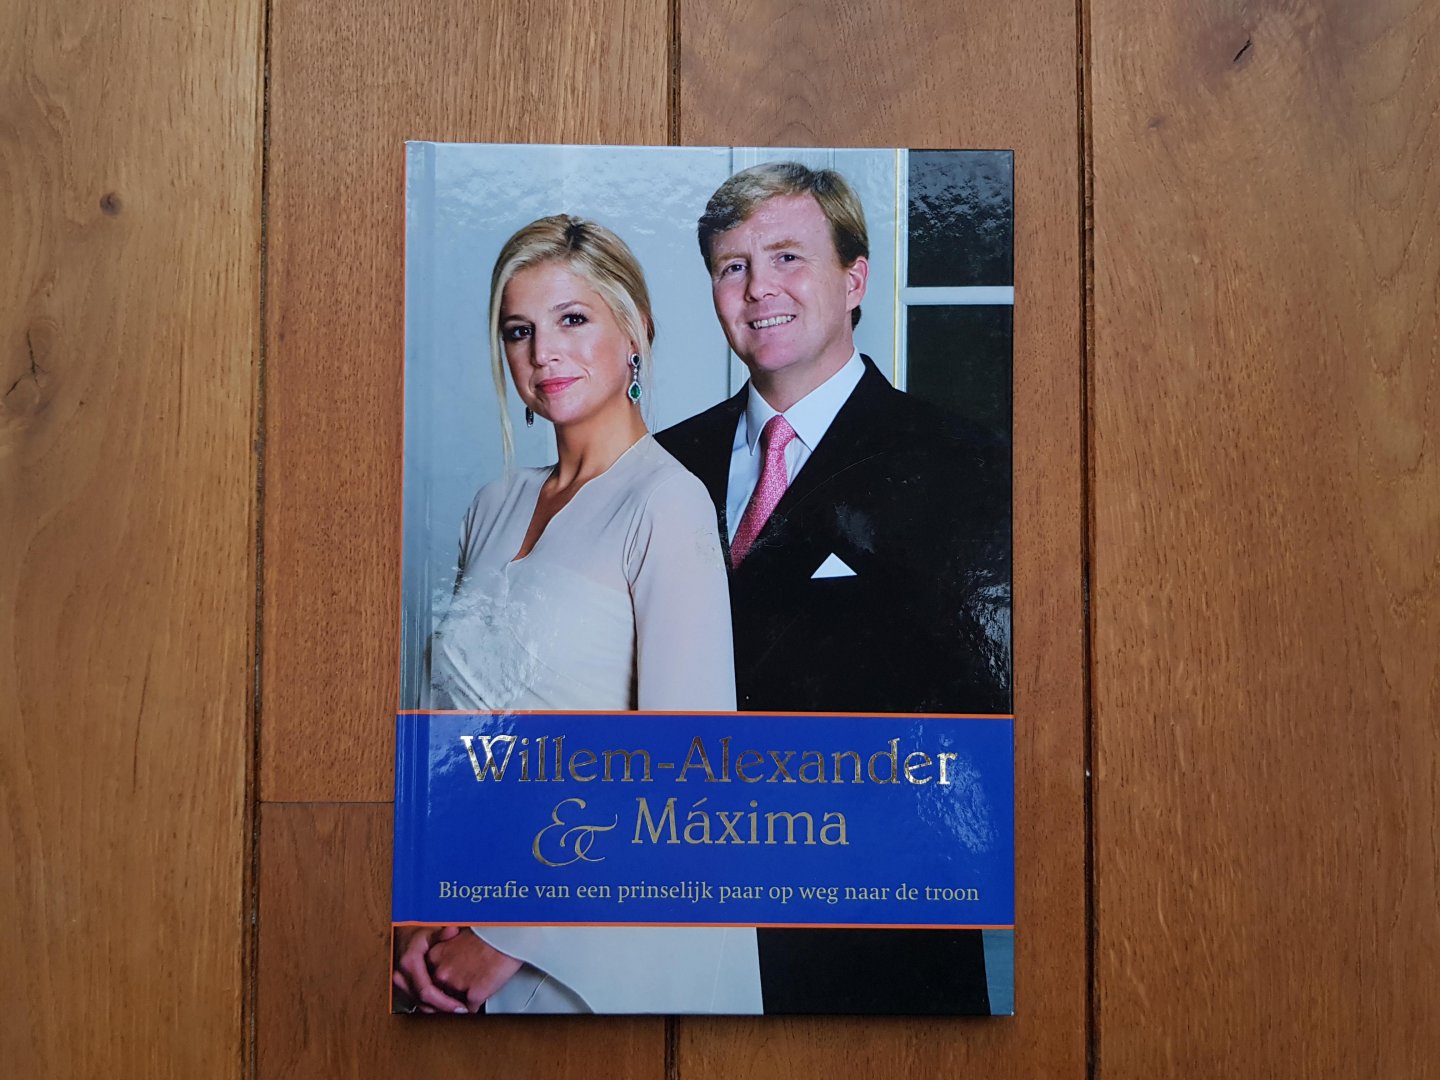 Roel Tanja - Willem-Alexander & Maxima, biografie van een prinselijk paar op weg naar de troon